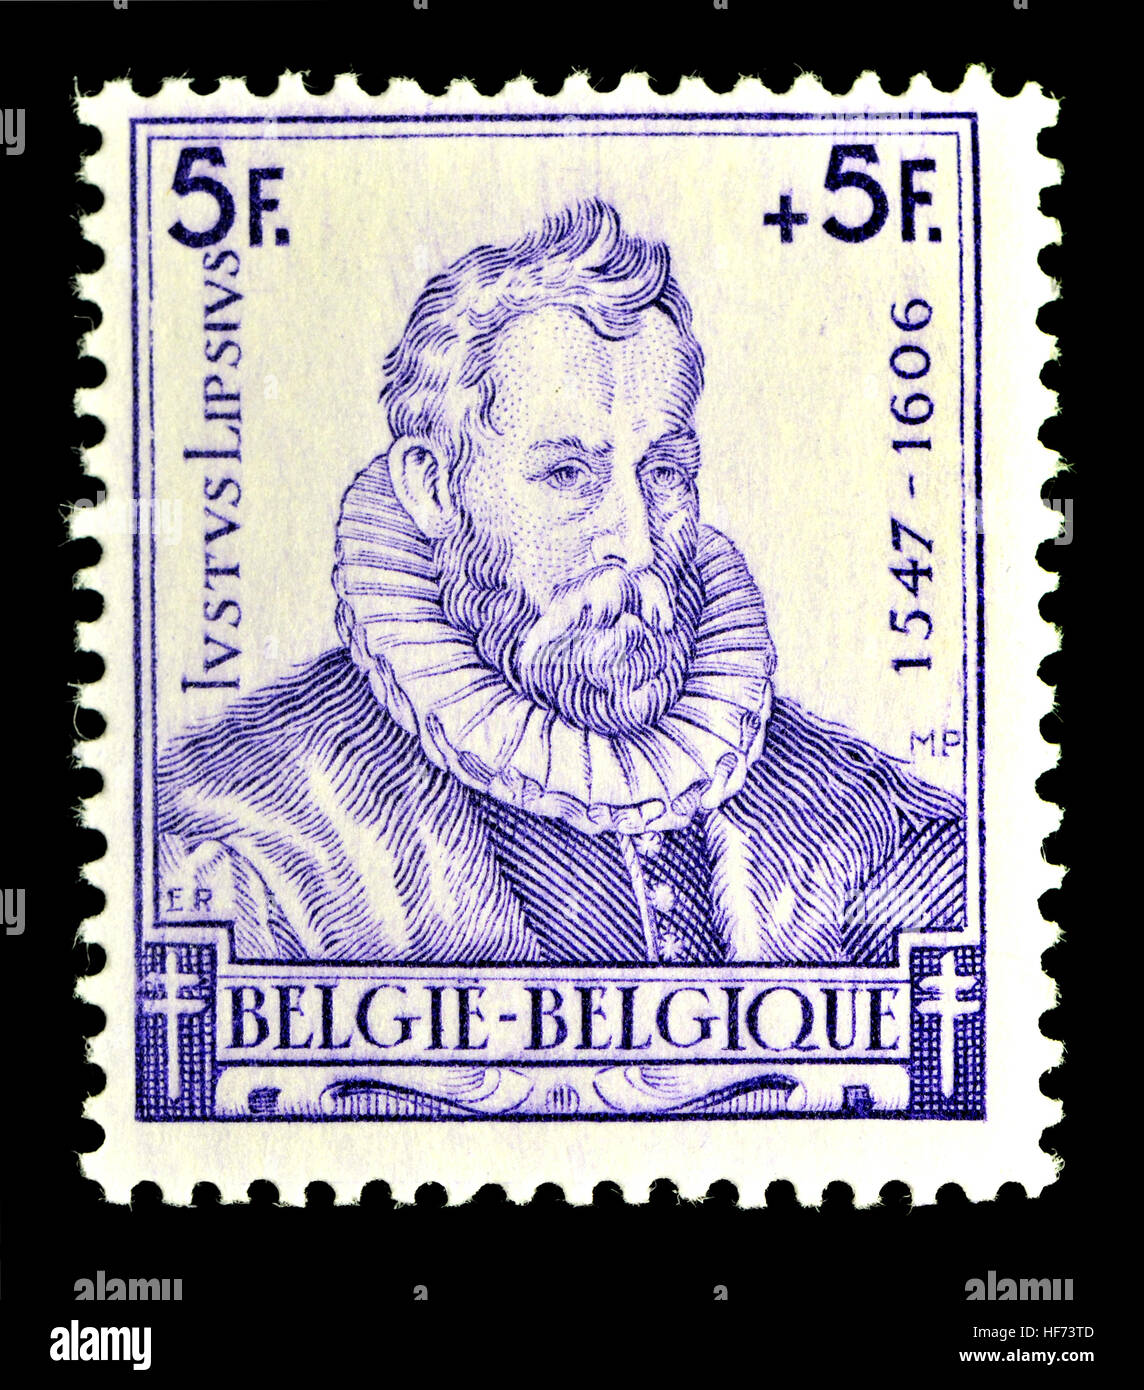 Sello belga (1942) : Justus Lipsius / Joose Labios / Joost Labios (1547 -  1606) Flamenco filólogo y humanista Fotografía de stock - Alamy